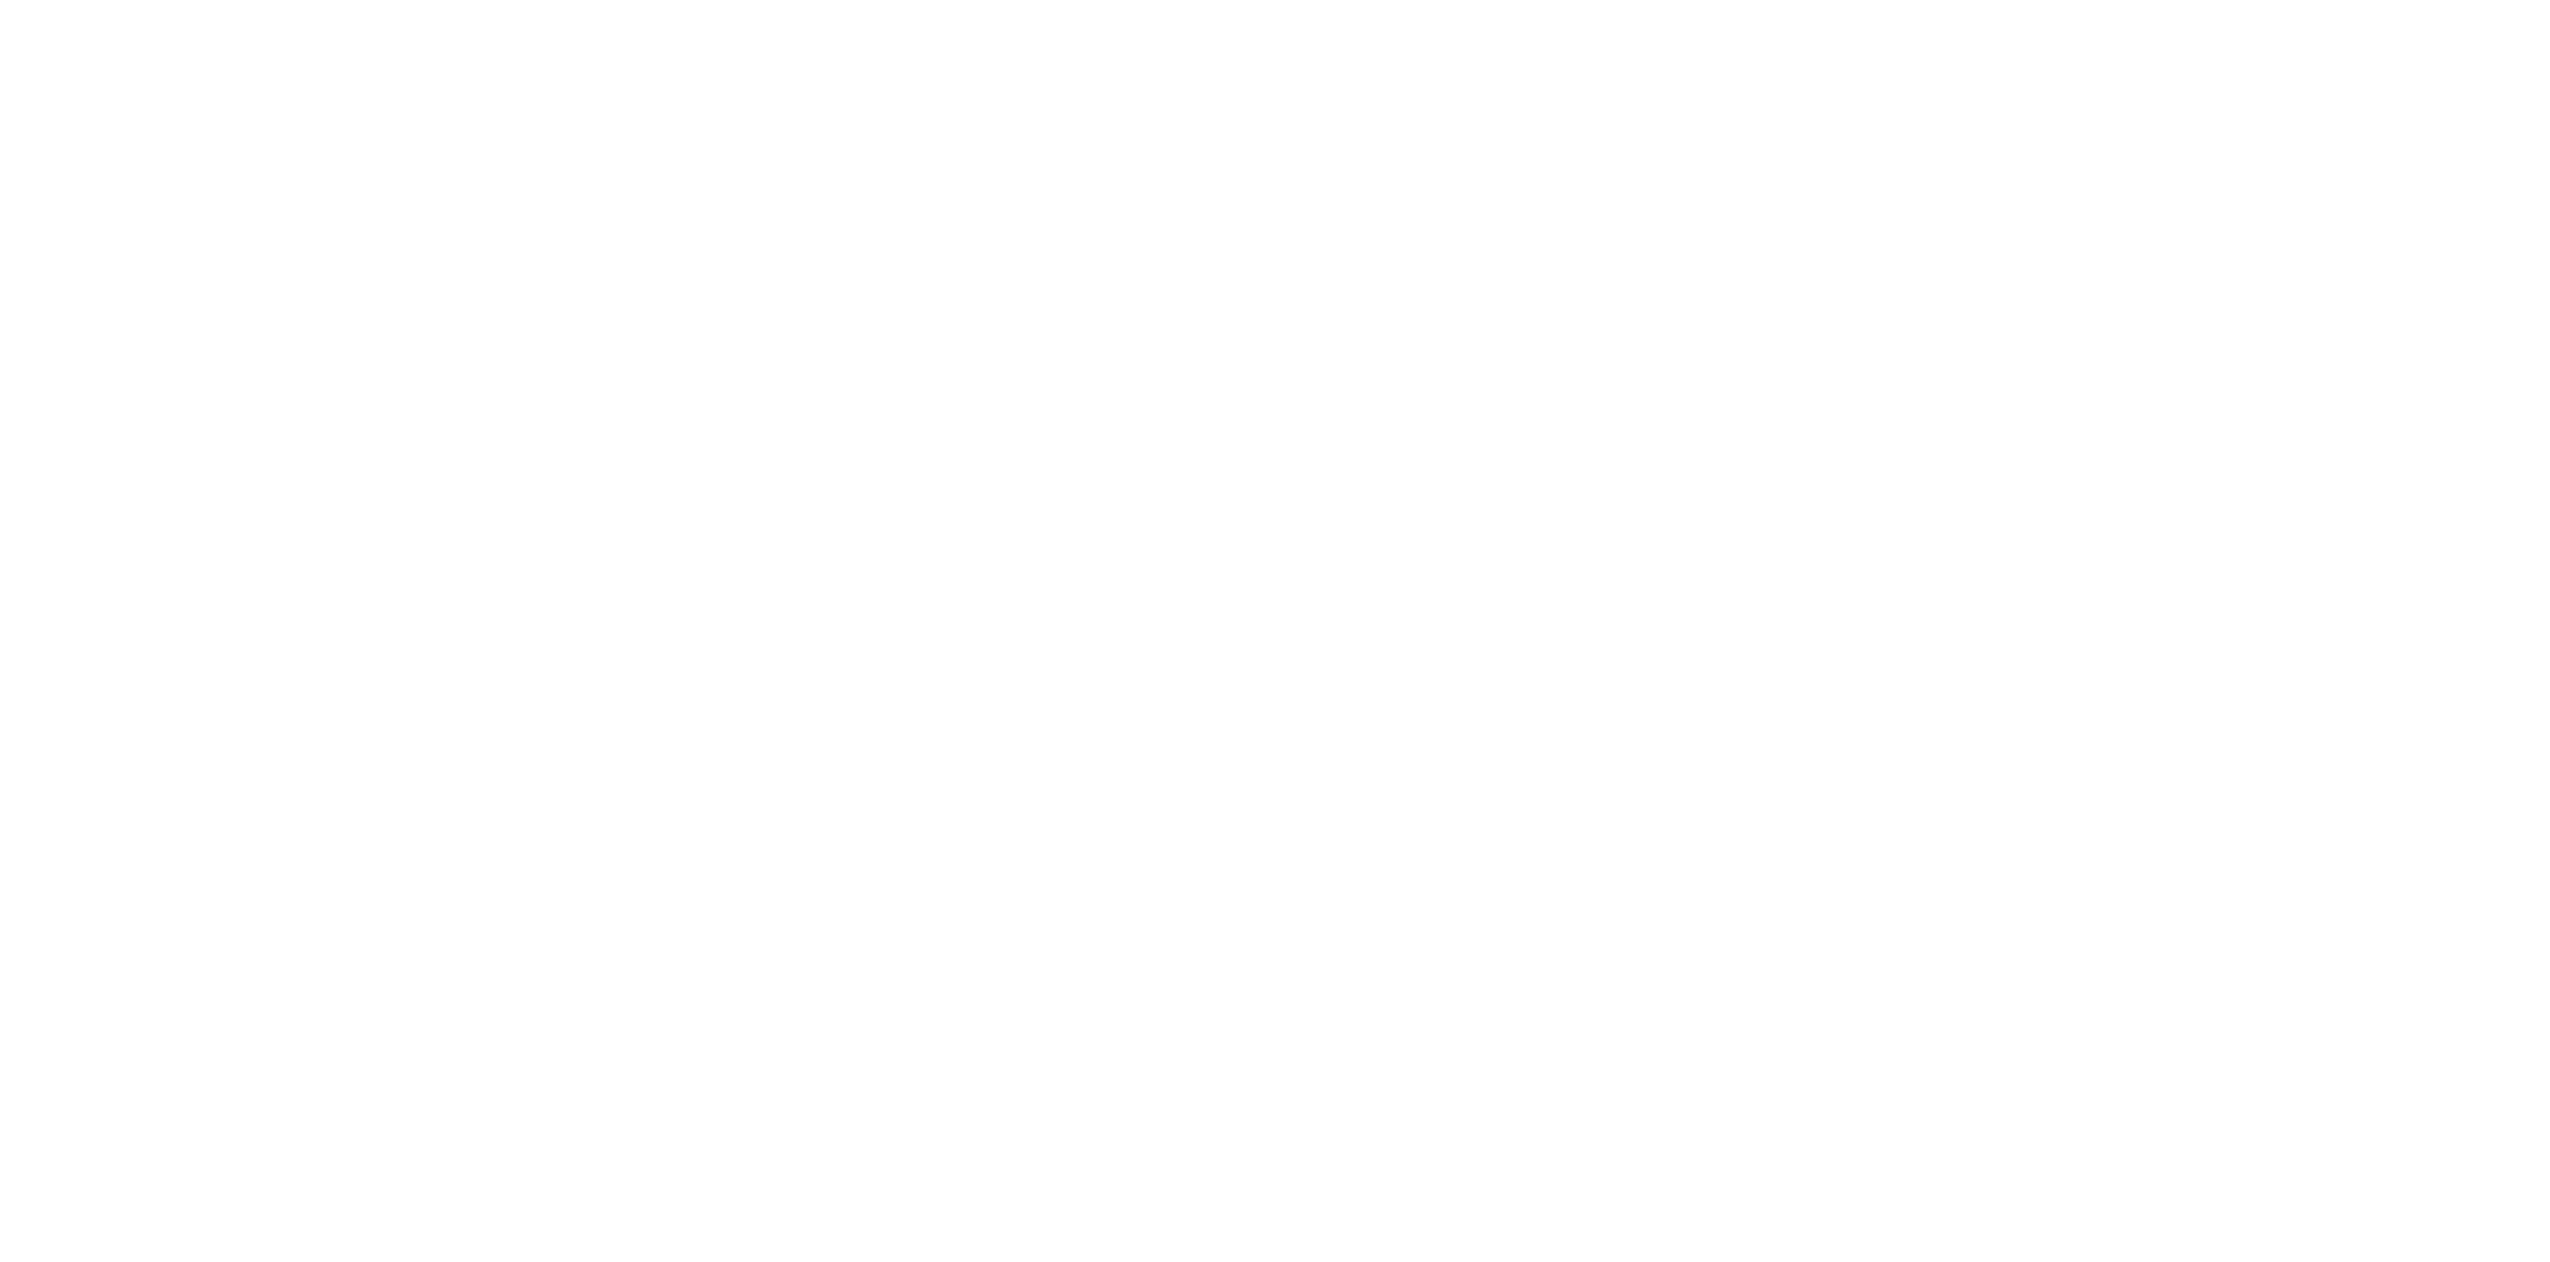 Senator Perez